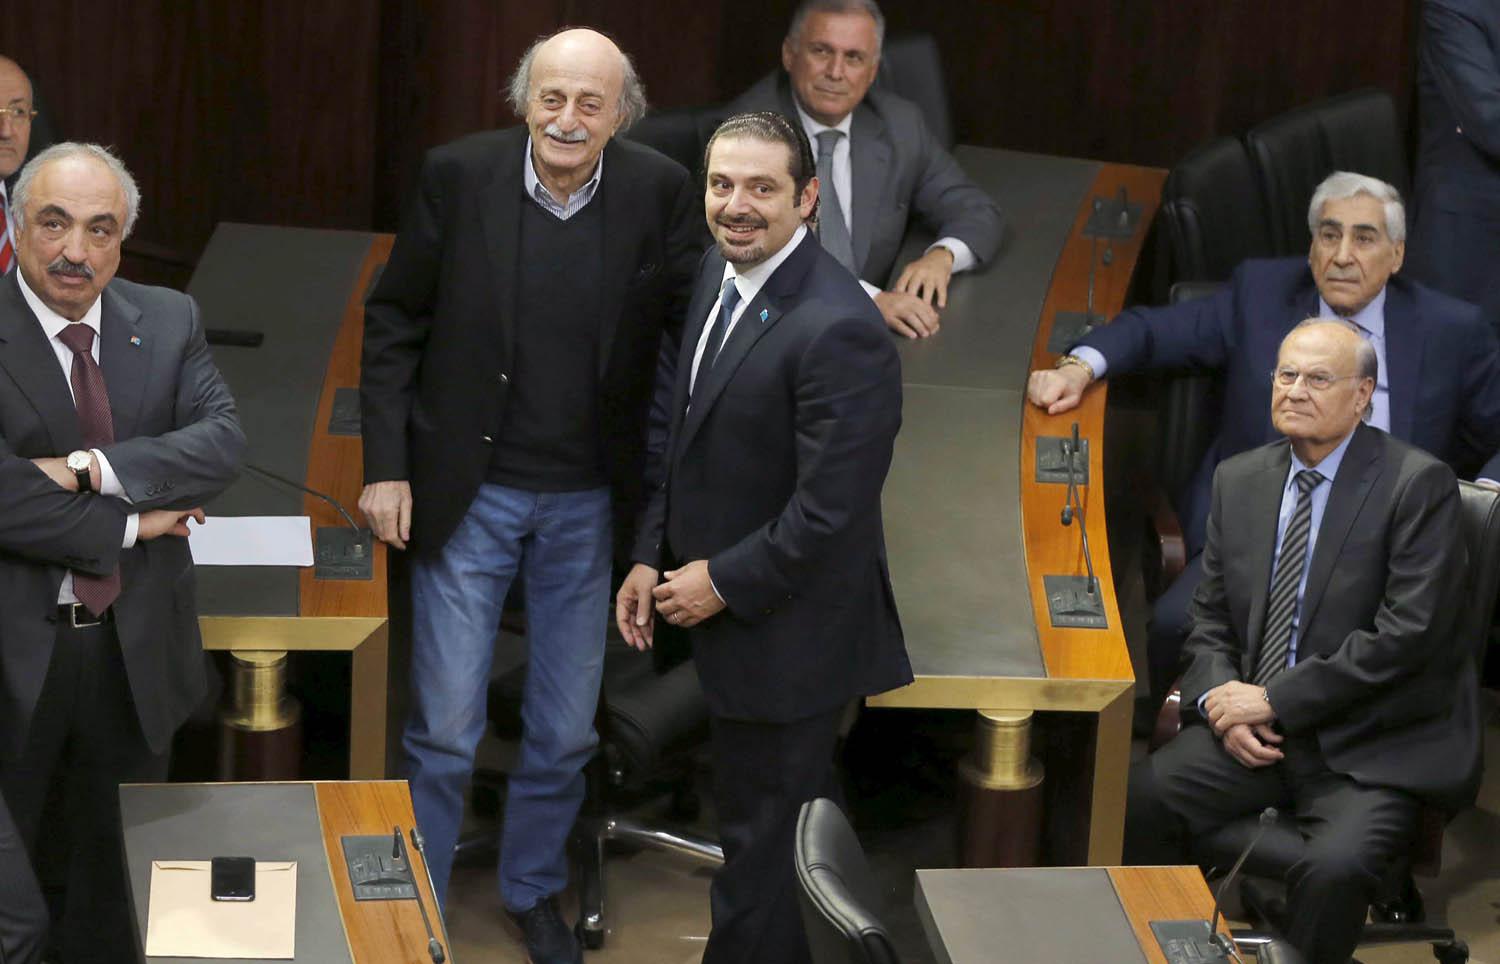 سعد الحريري ووليد جنبلاط في اجتماع للبرلمان اللبناني